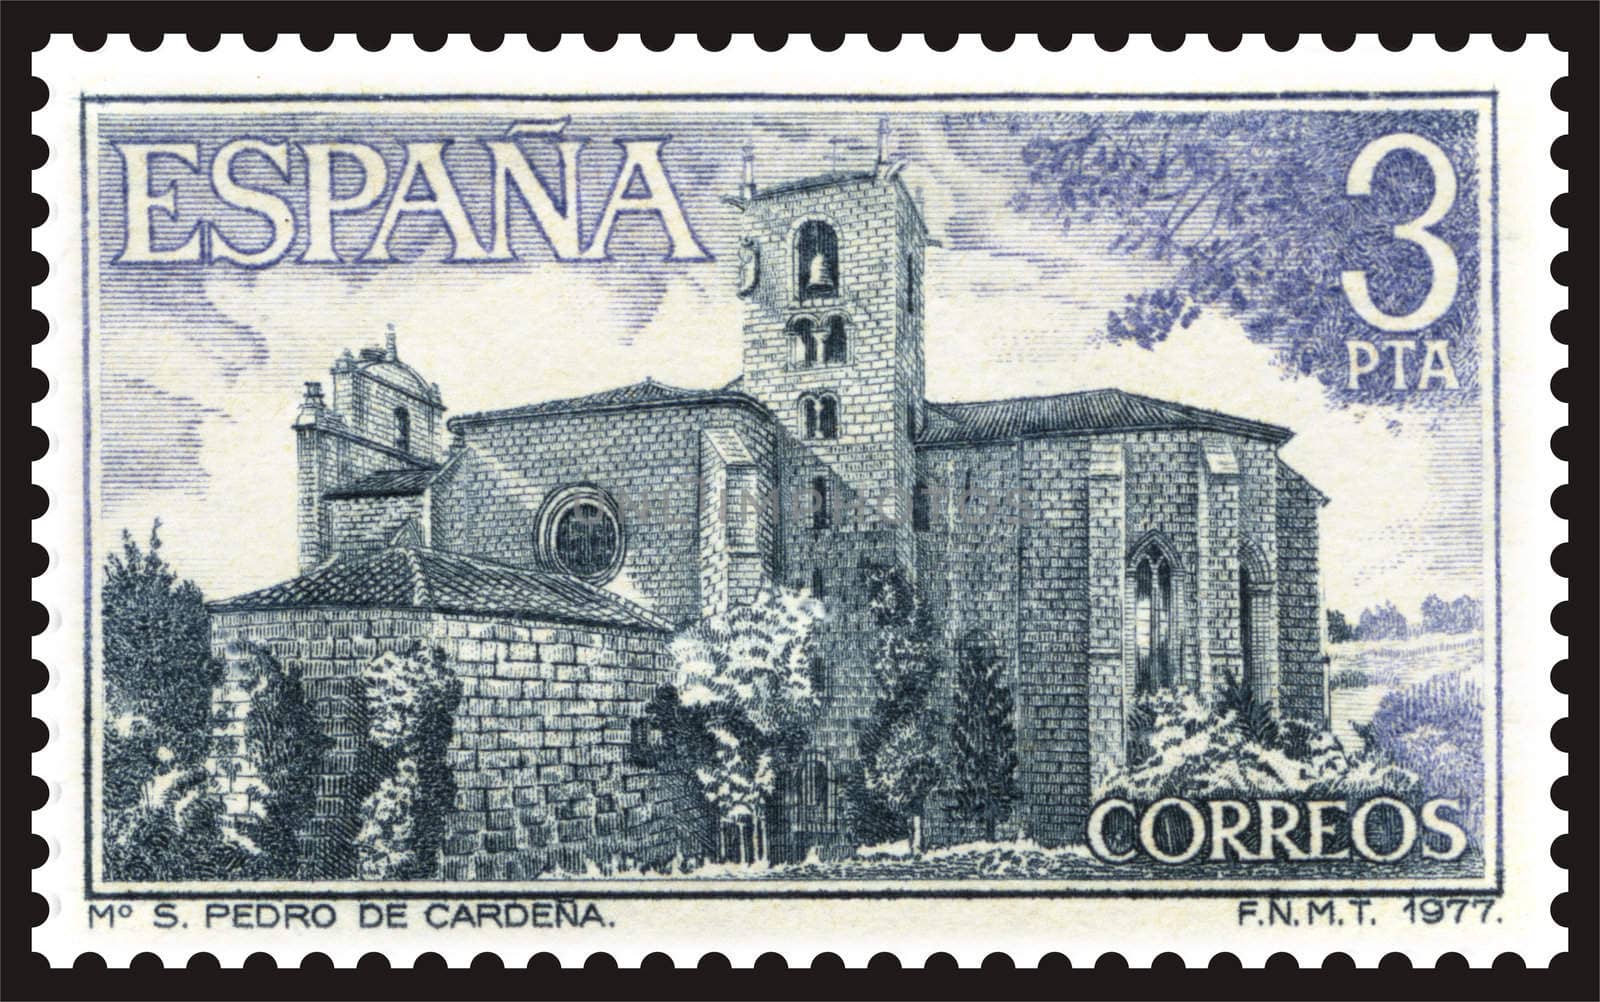 Vintage Spanish Stamps. 1977
“Monasterio de San Pedro de Cardeña”